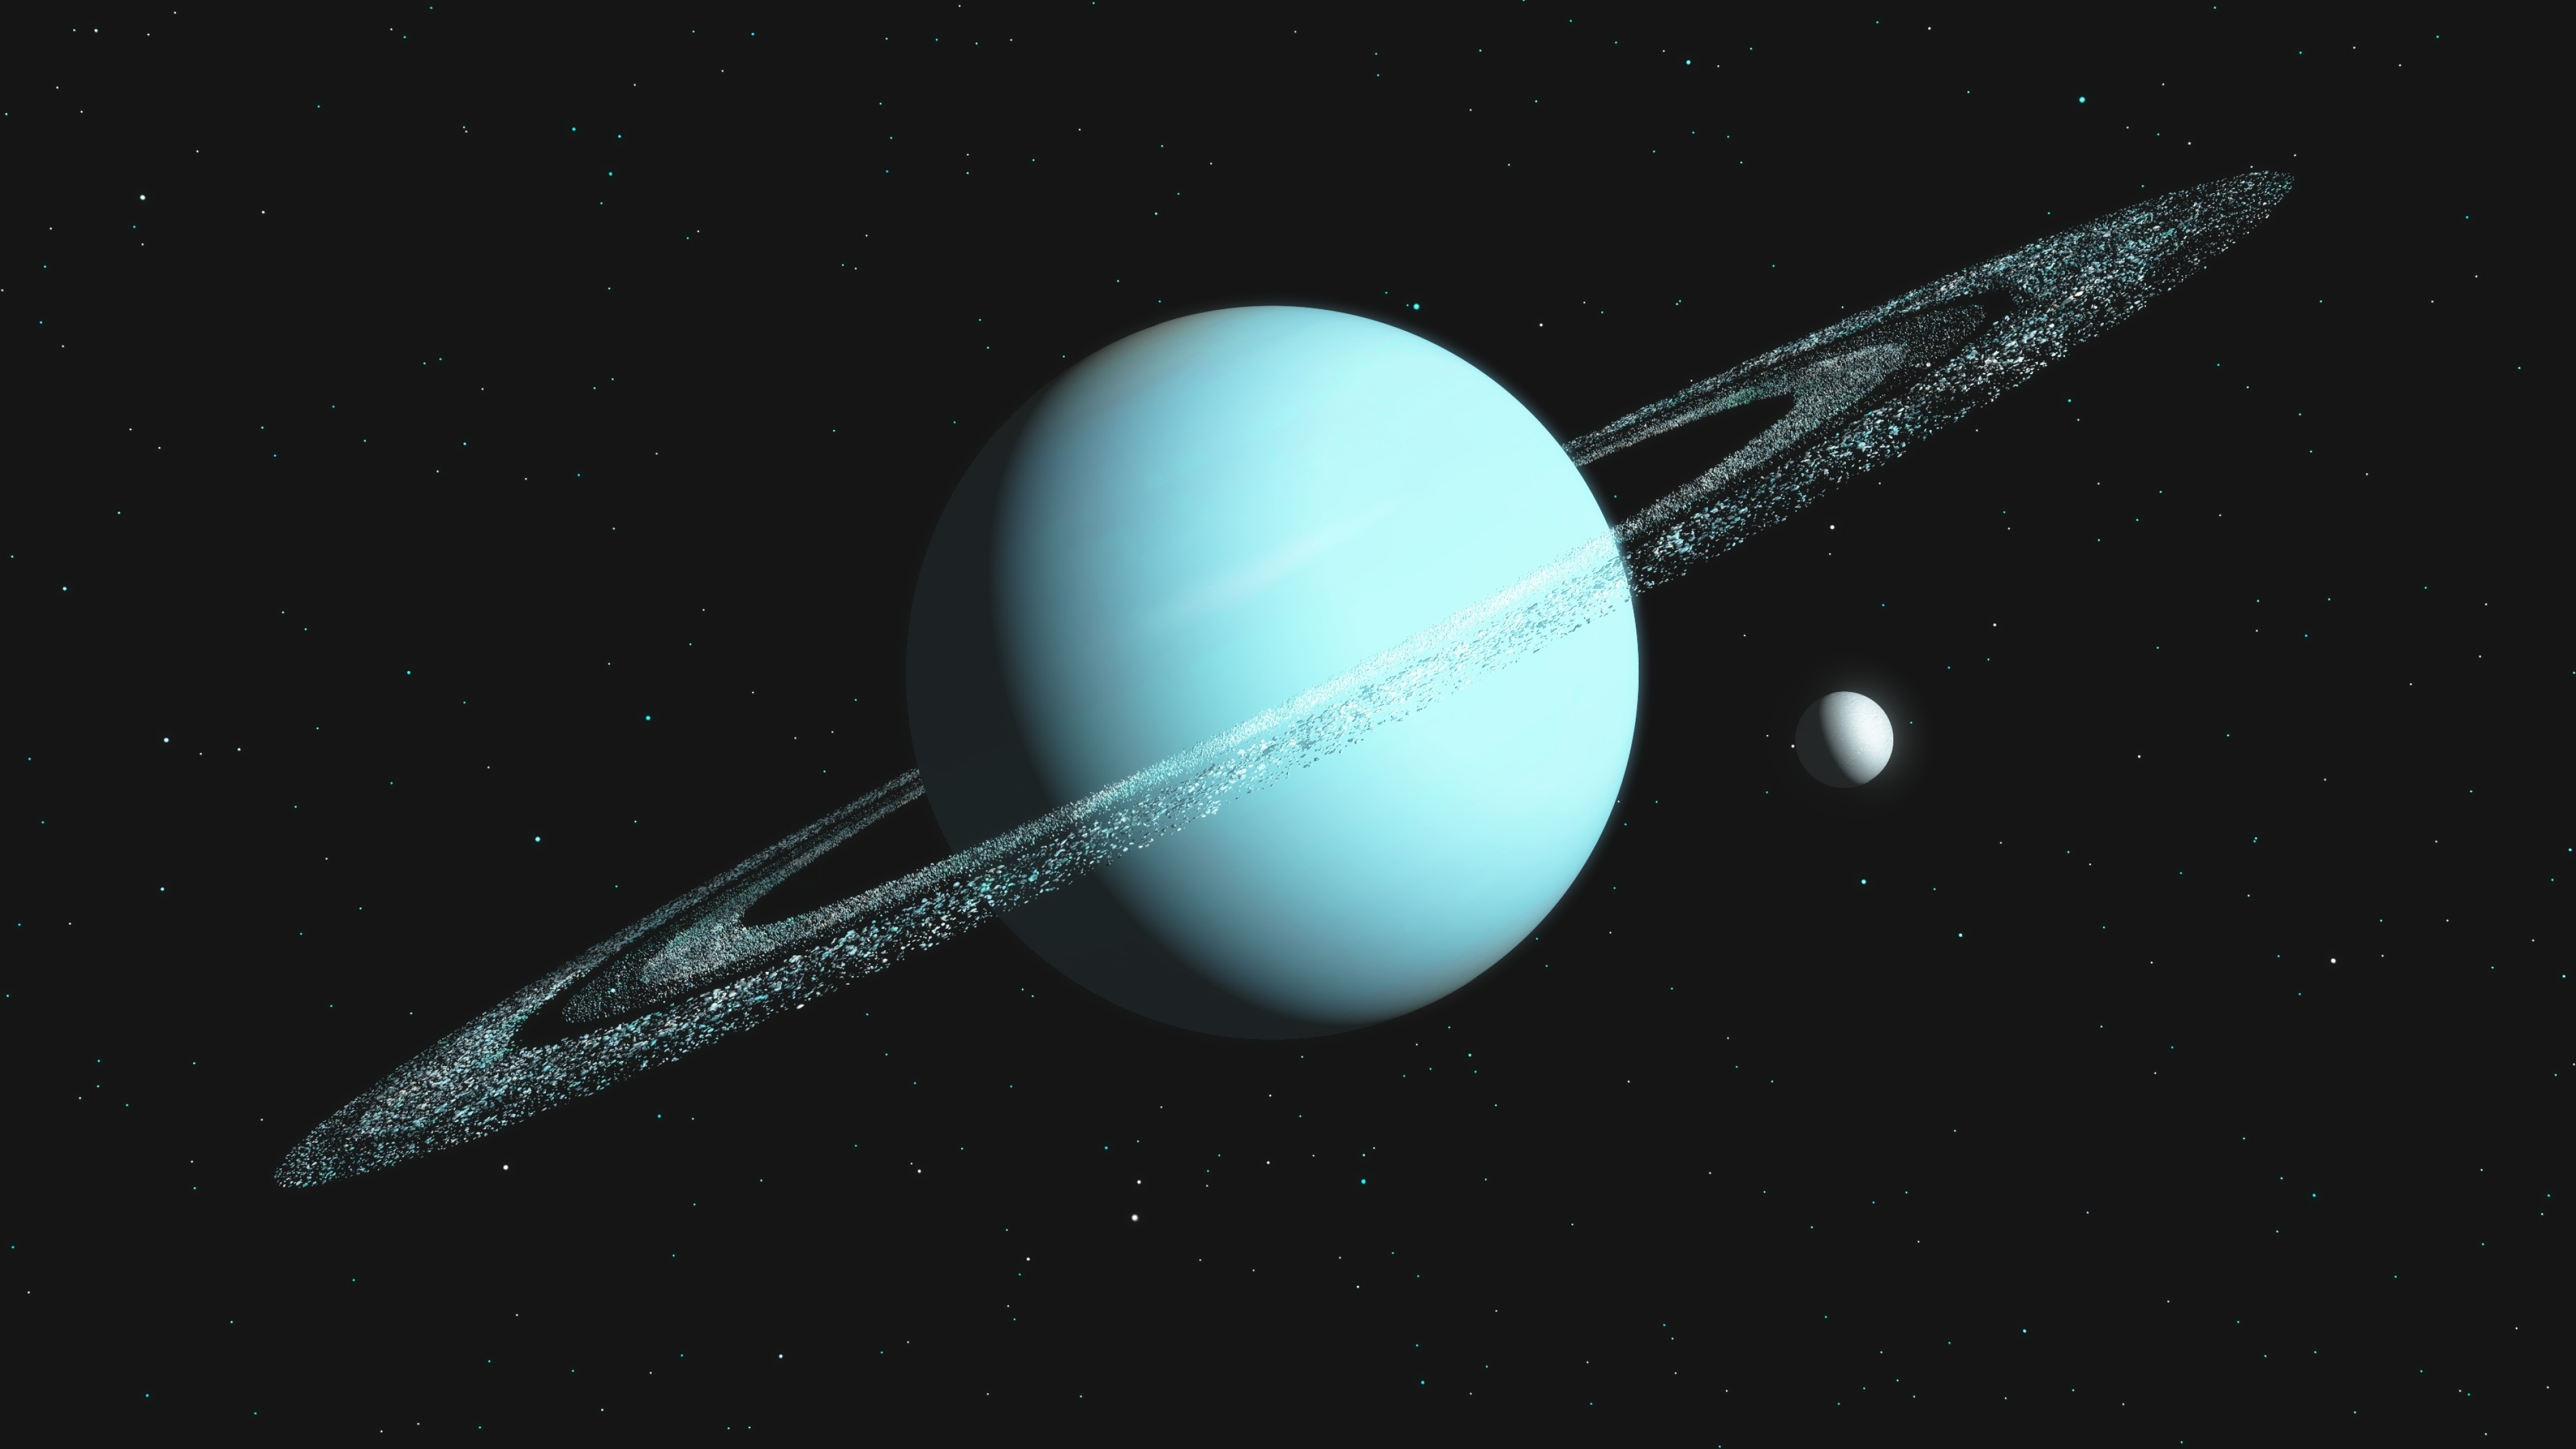 Quatre des cinq plus grosses lunes d'Uranus pourraient bien abriter un océan relique : un océan formé il y a des milliards d'années, qui garde sa chaleur grâce aux désintégrations radioactives. © Ericus, Adobe Stock